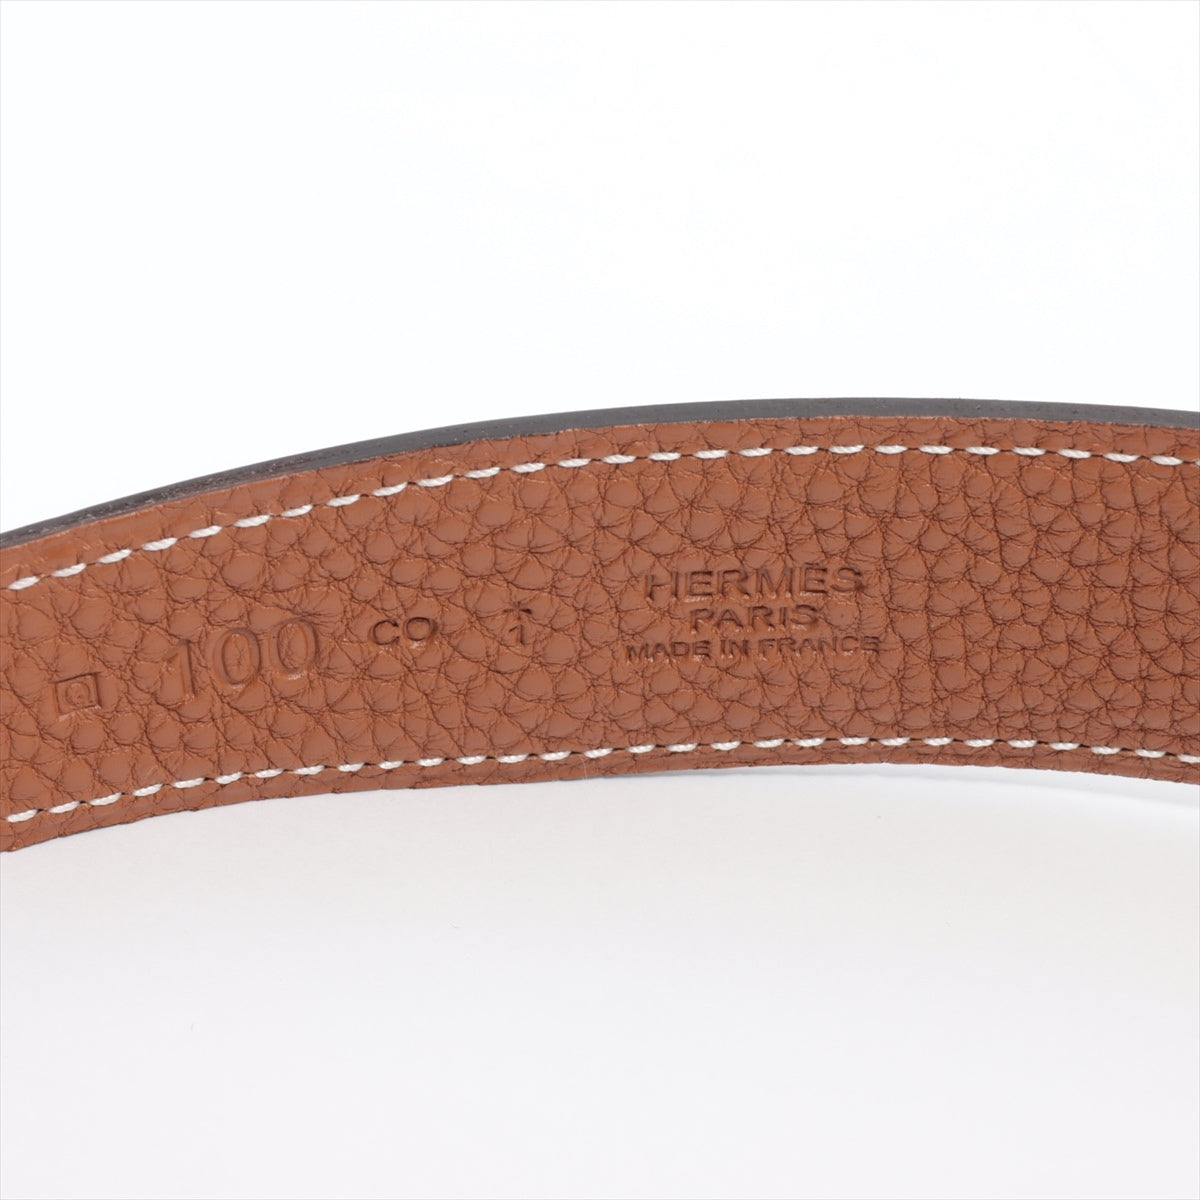 Hermès Collier de Chien □Q：2013 Belt 100 Leather Black